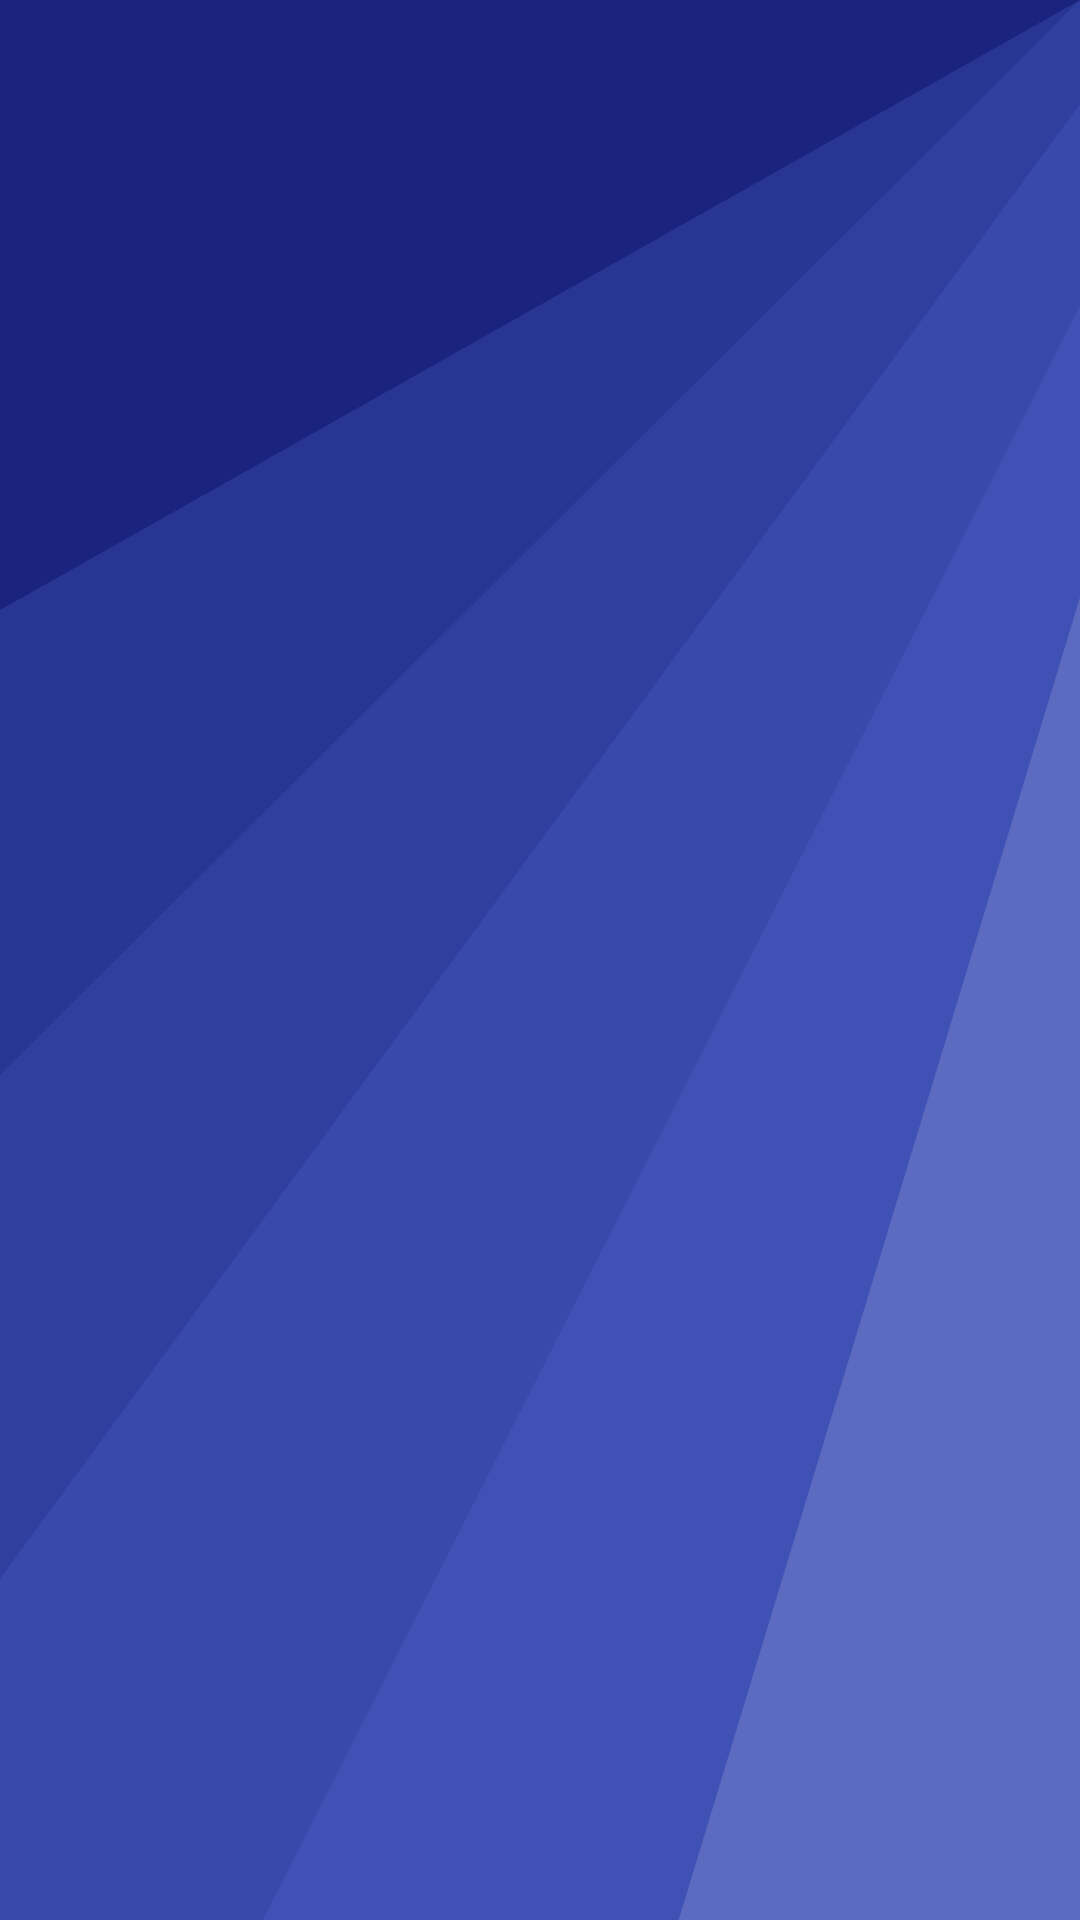 fondos fond d'écran,bleu cobalt,bleu,jour,bleu électrique,violet